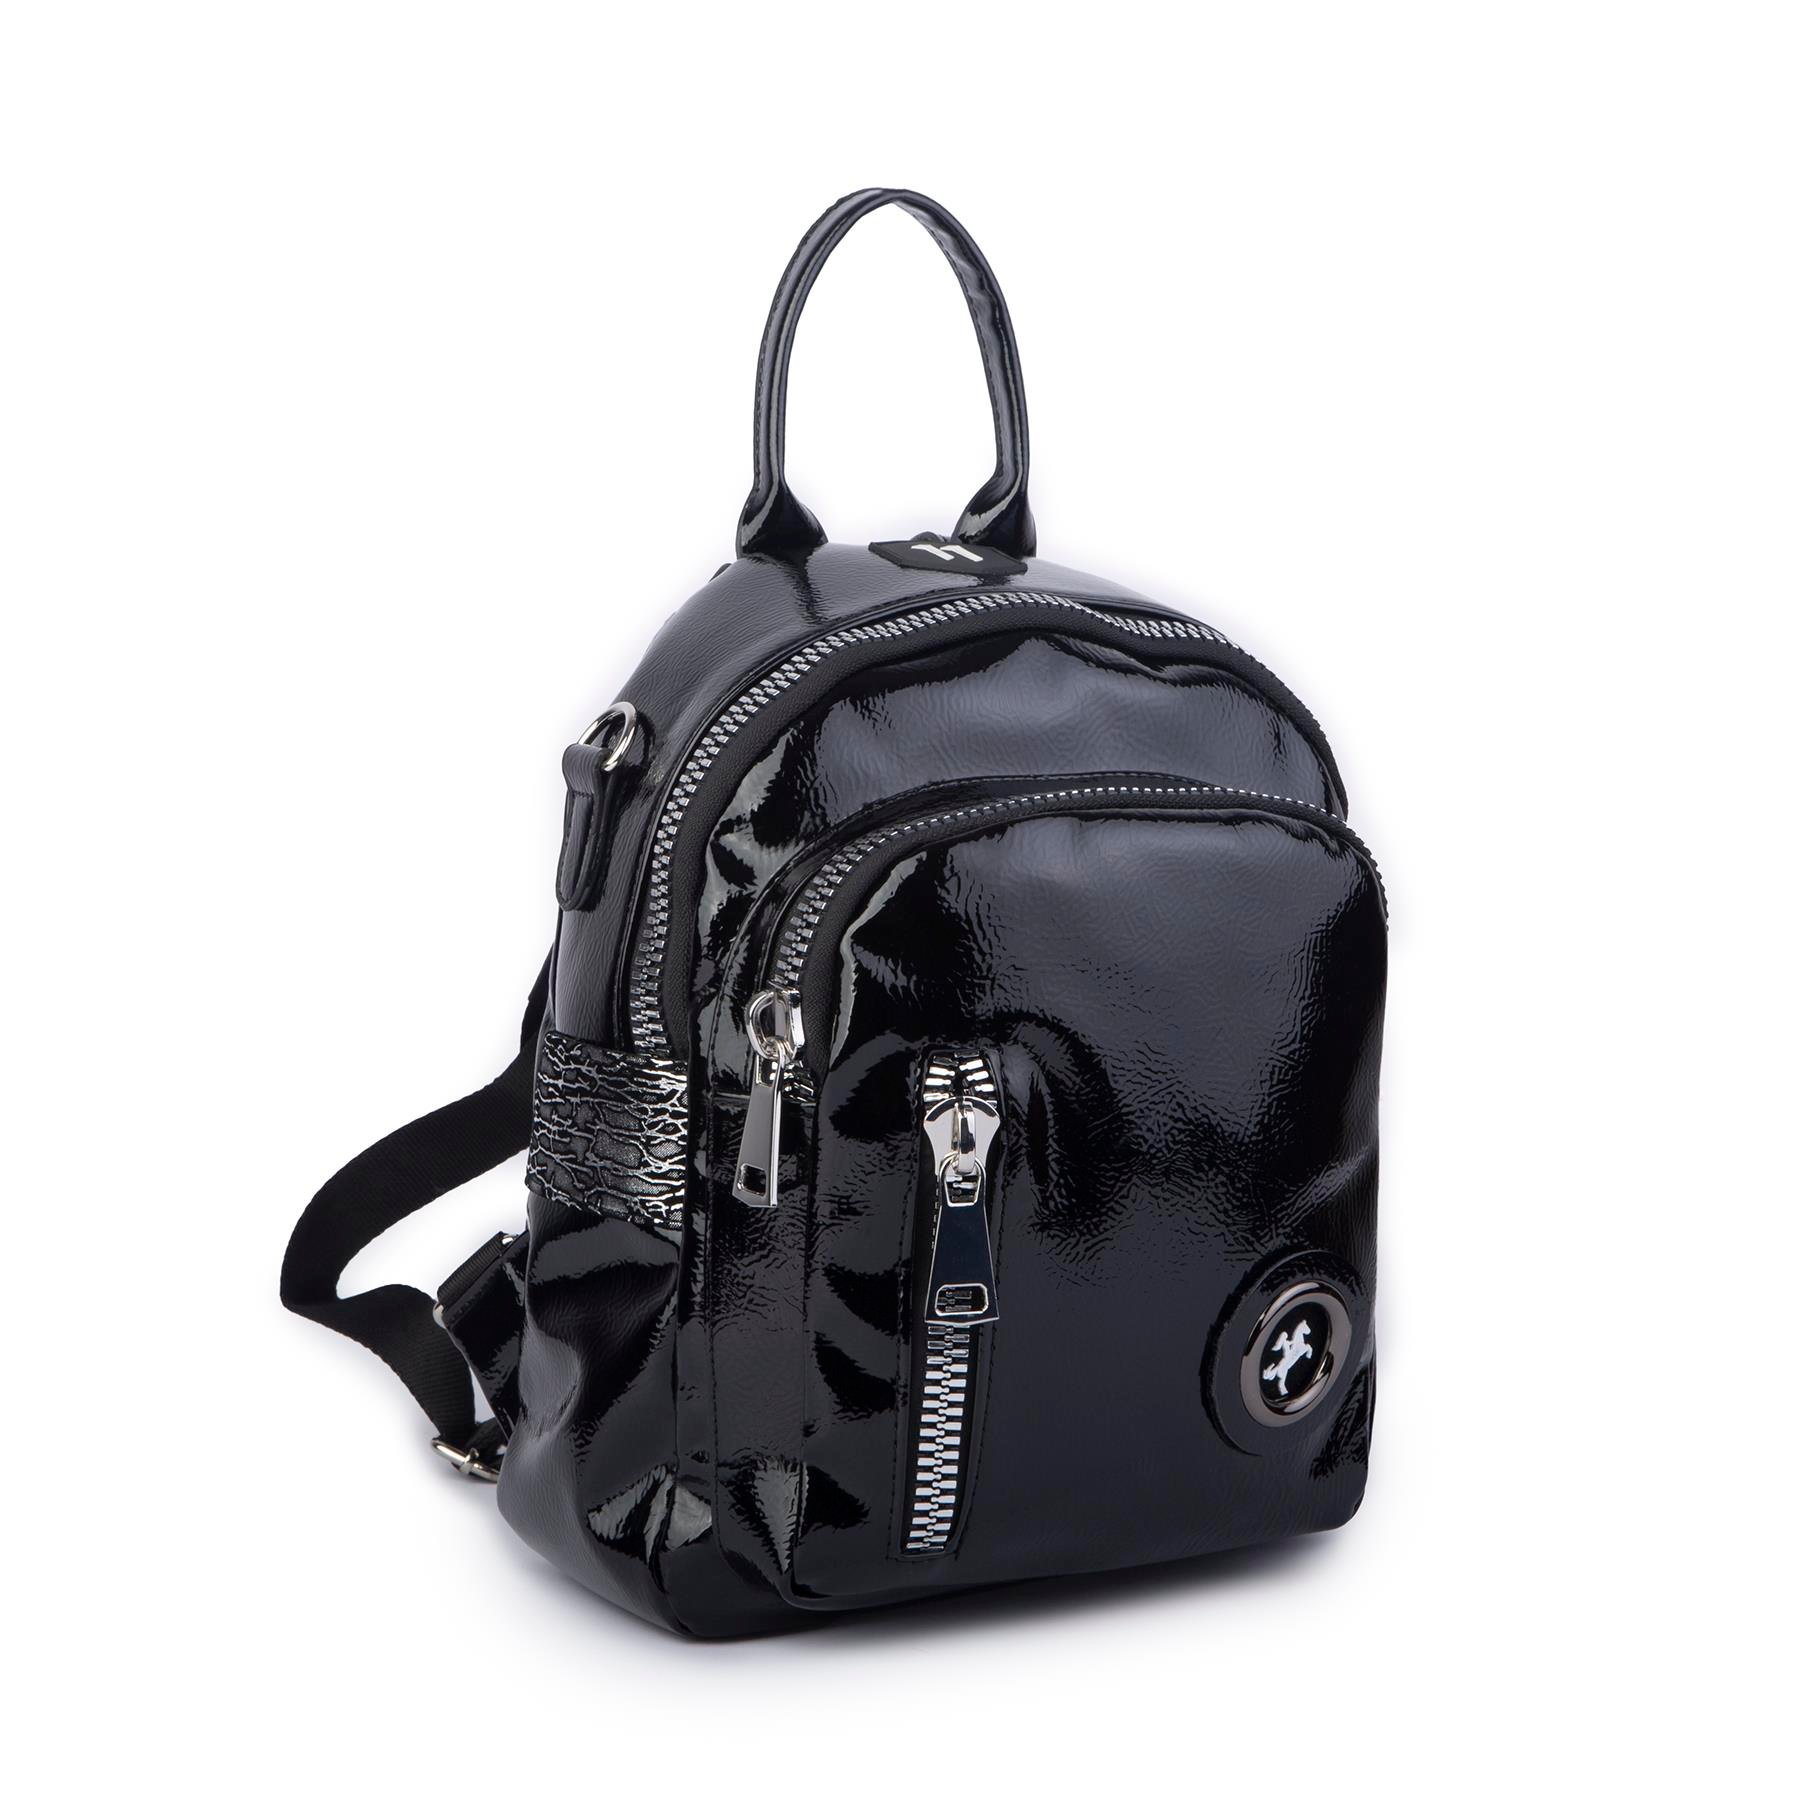 Nas Bag Kadın Dönüştürülebilir Sırt ve Omuz Çantası Şık Geniş Fermuarlı  Çanta (24x31x14 cm) Siyah Krsk RuganNas Bag